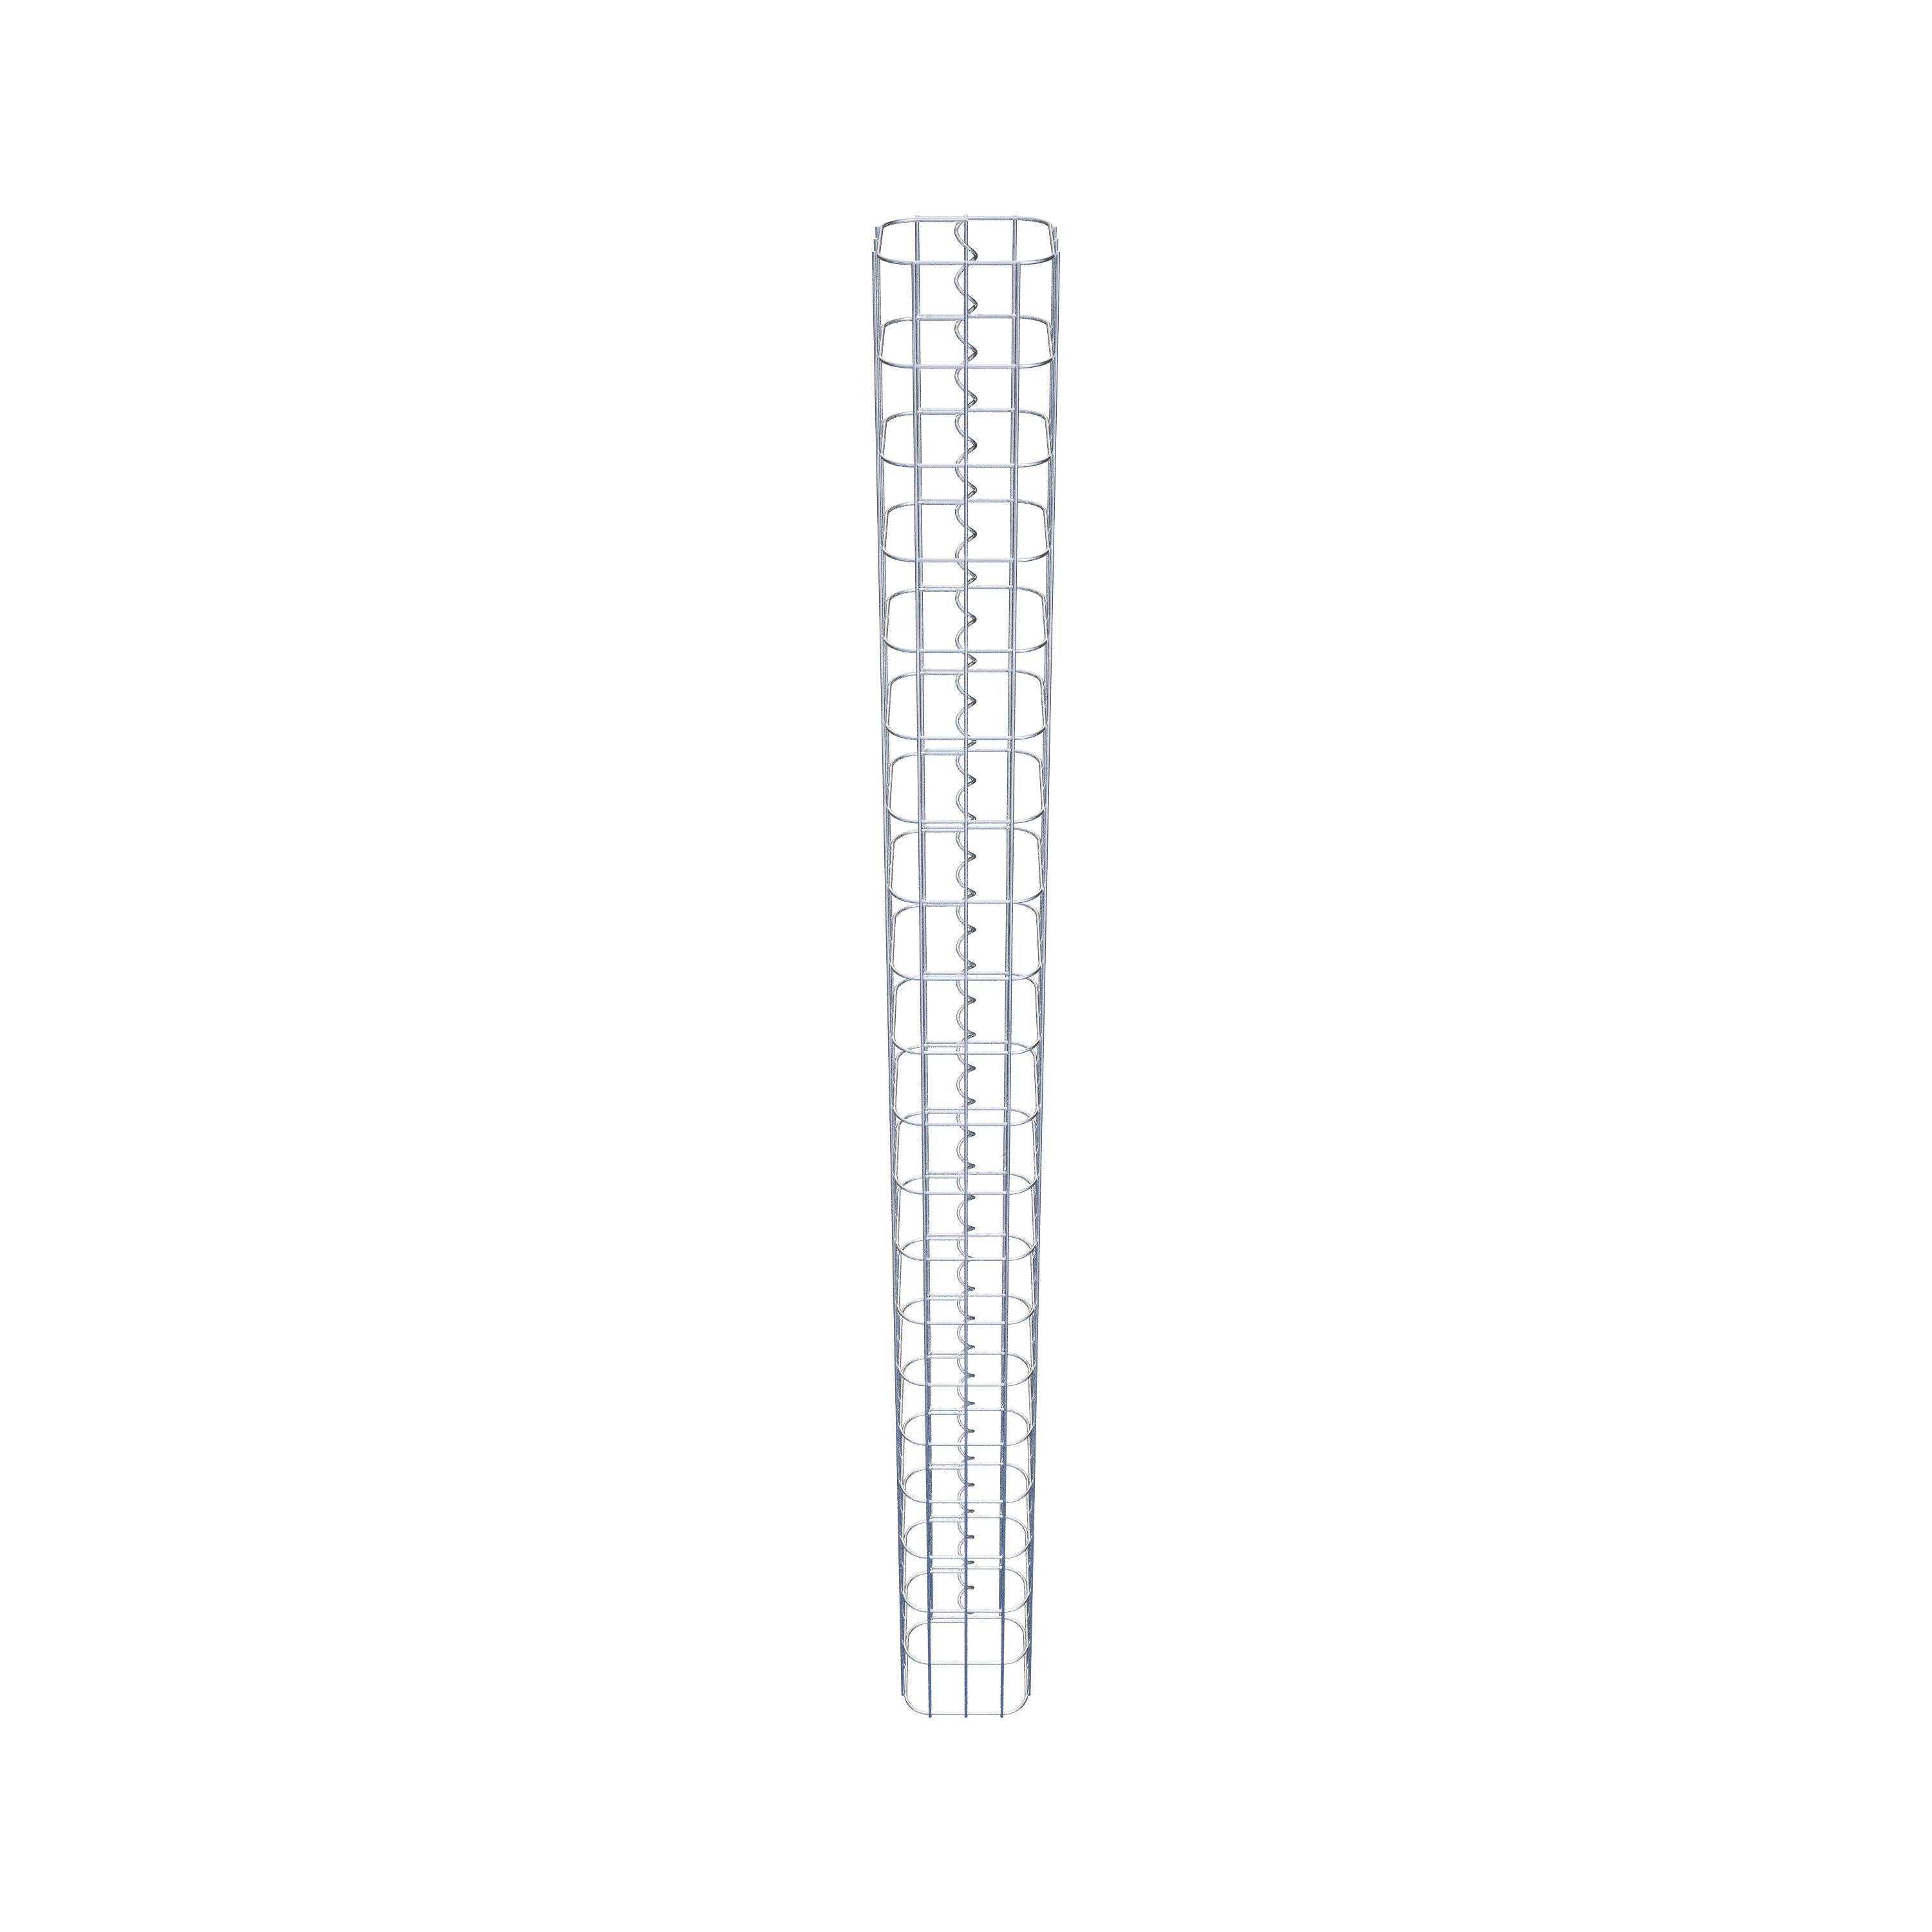 Gabionpelare, fyrkantig, varmförzinkad, 17 cm x 17 cm, 200 cm höjd, MV 5 cm x 10 cm